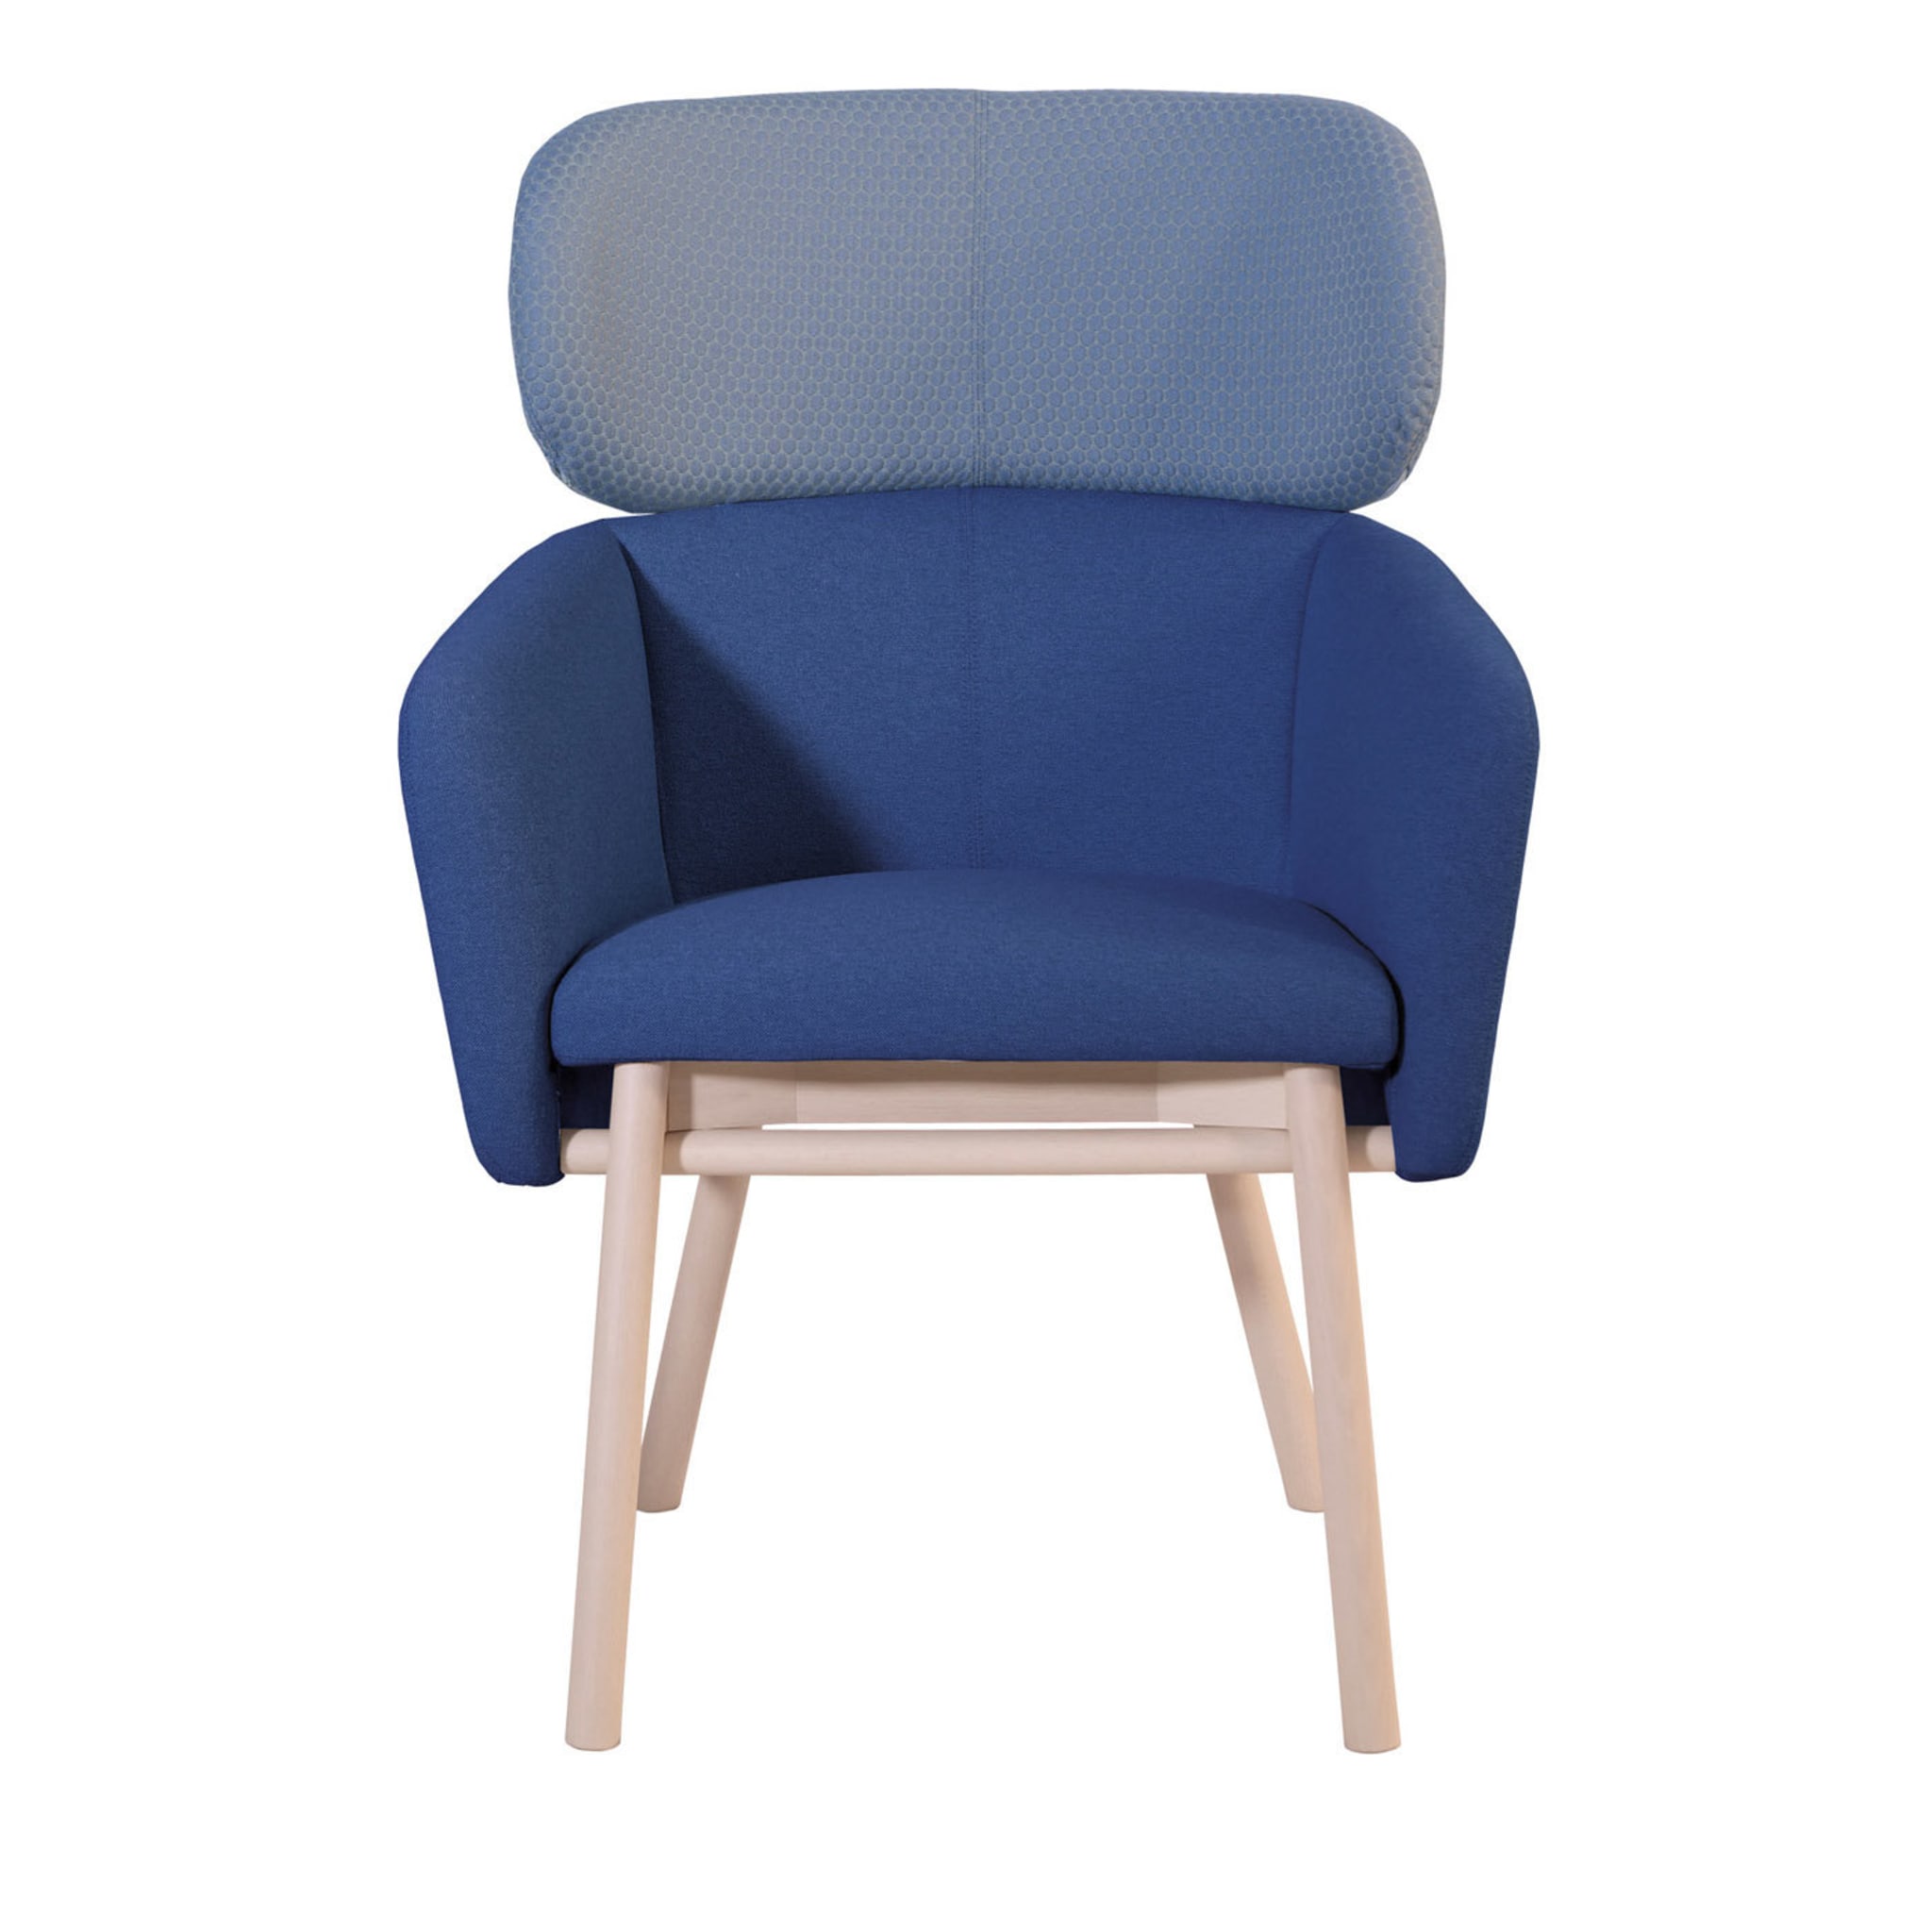 Balù XL Blue and Lightblue Chair By Emilio Nanni - Main view